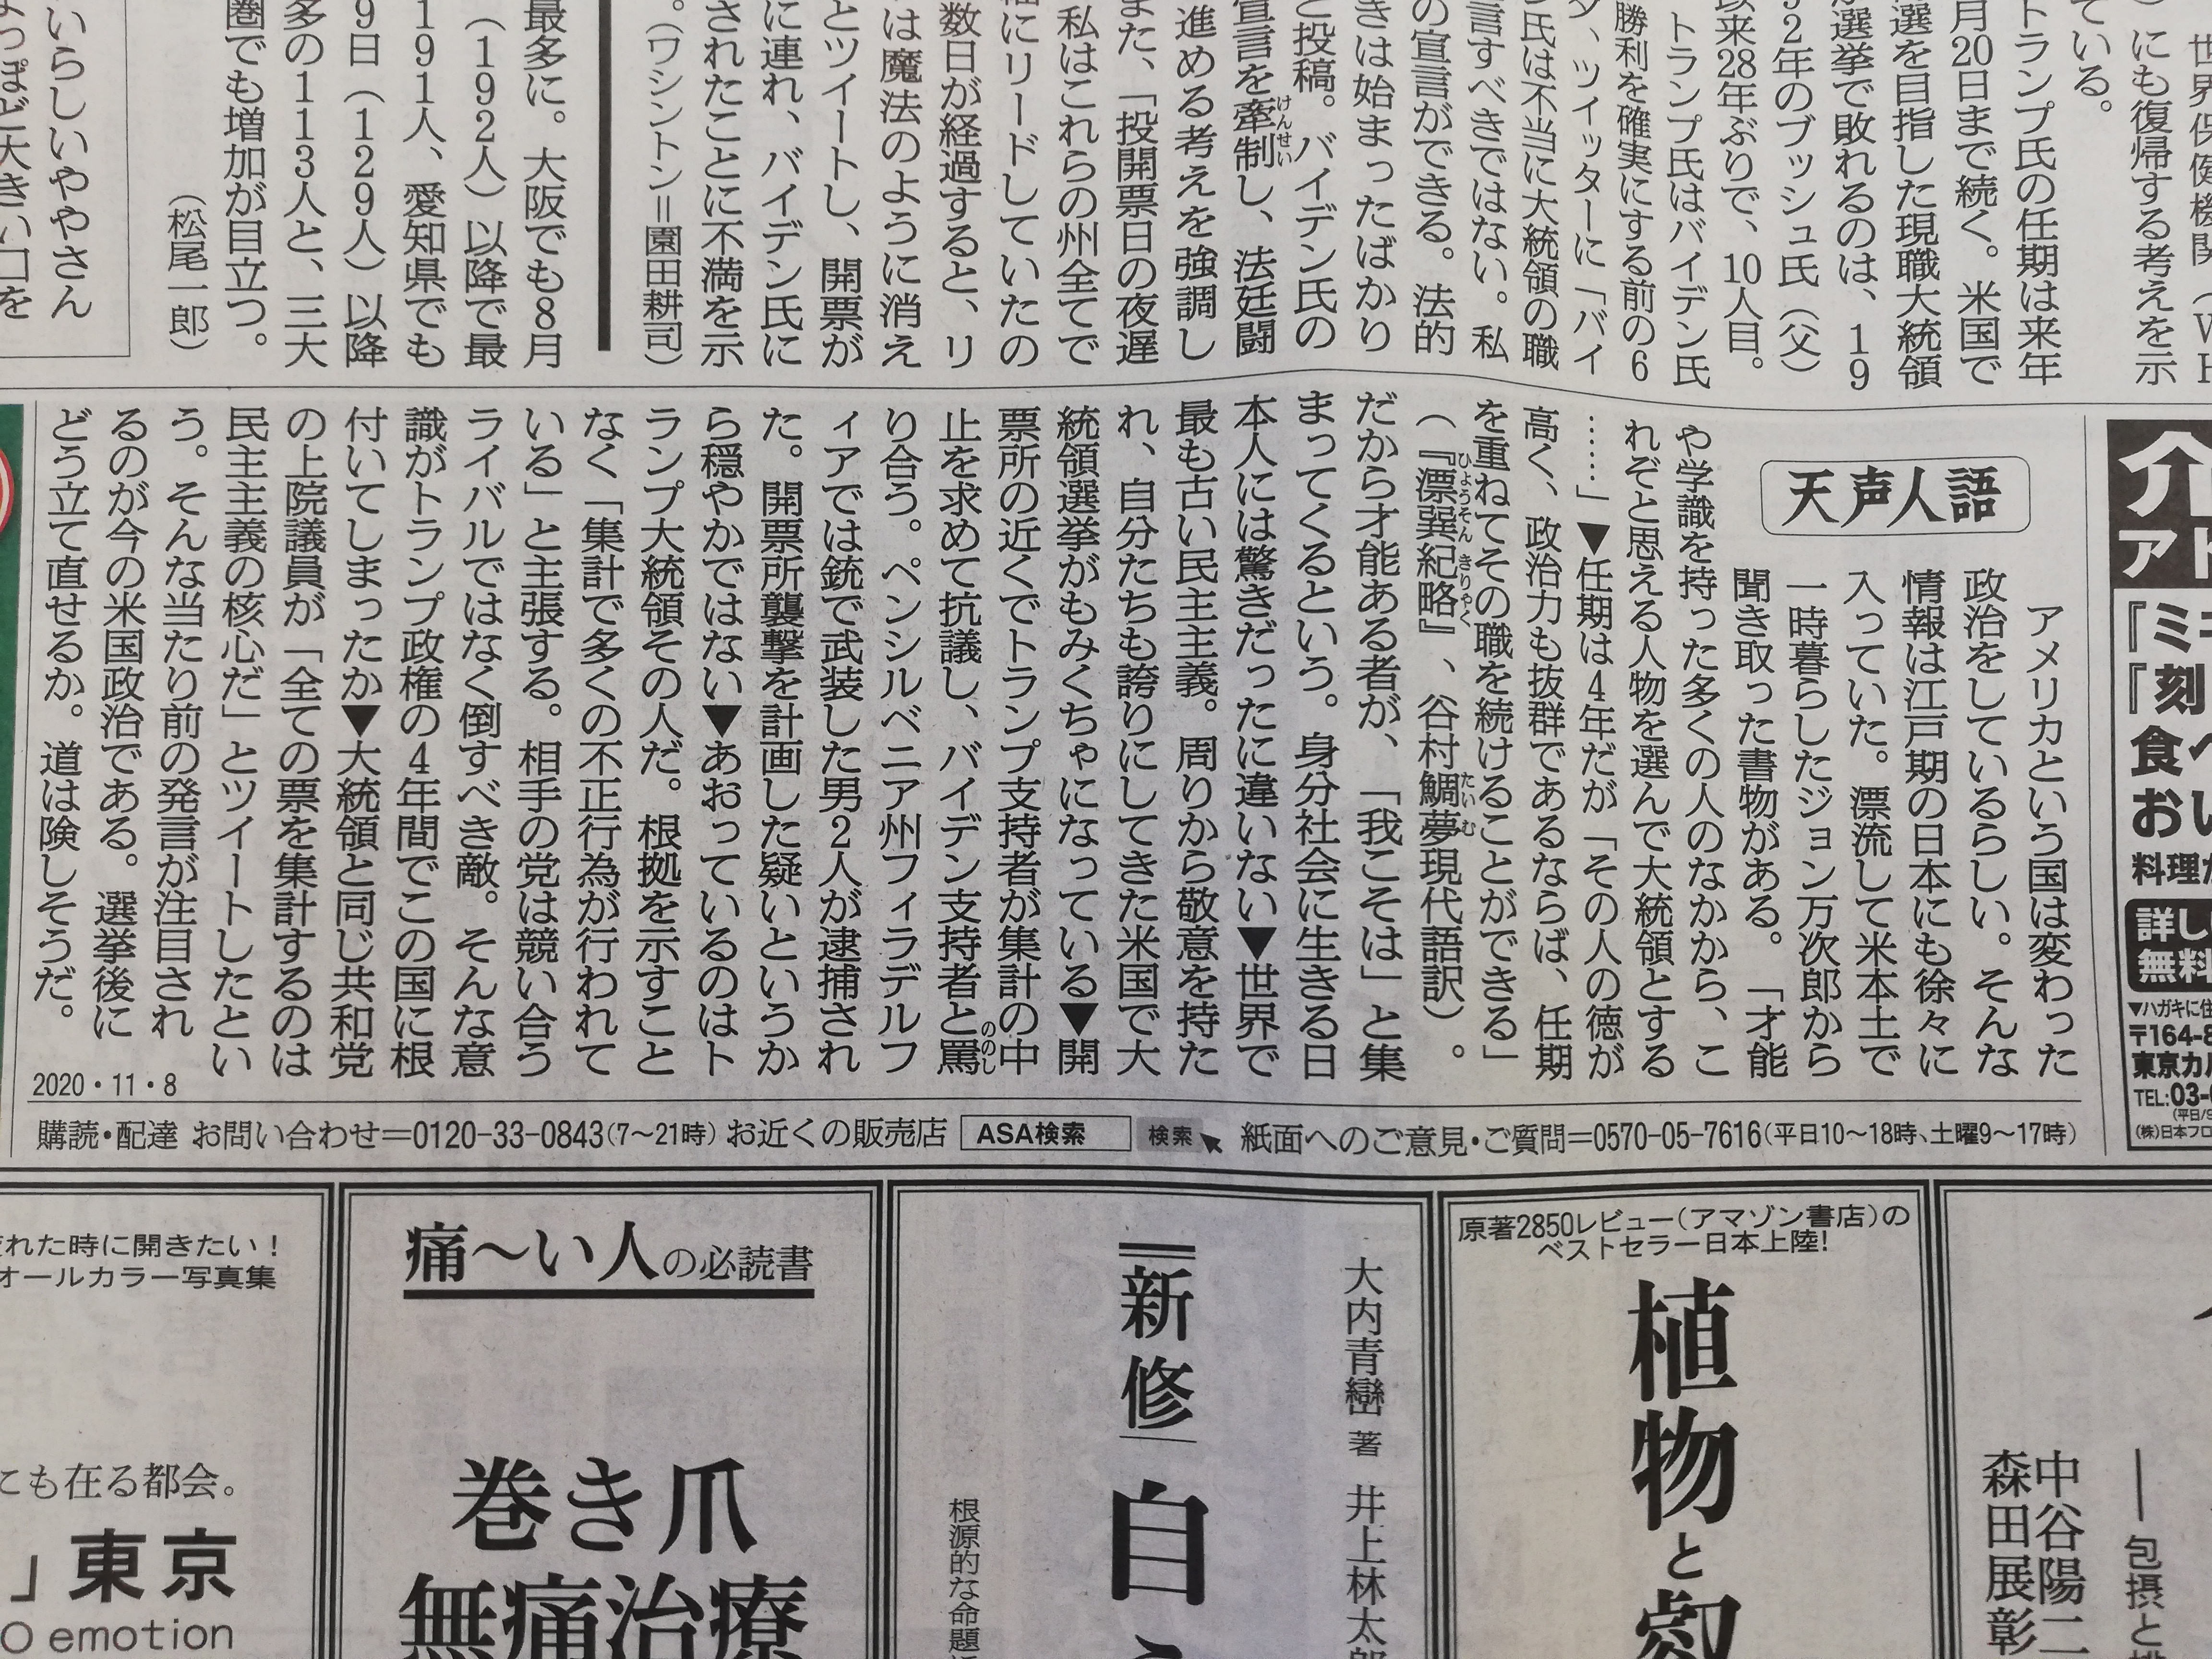 関東高知県人会ホームページ - 11月8日（日）朝日新聞朝刊天声人語にて 